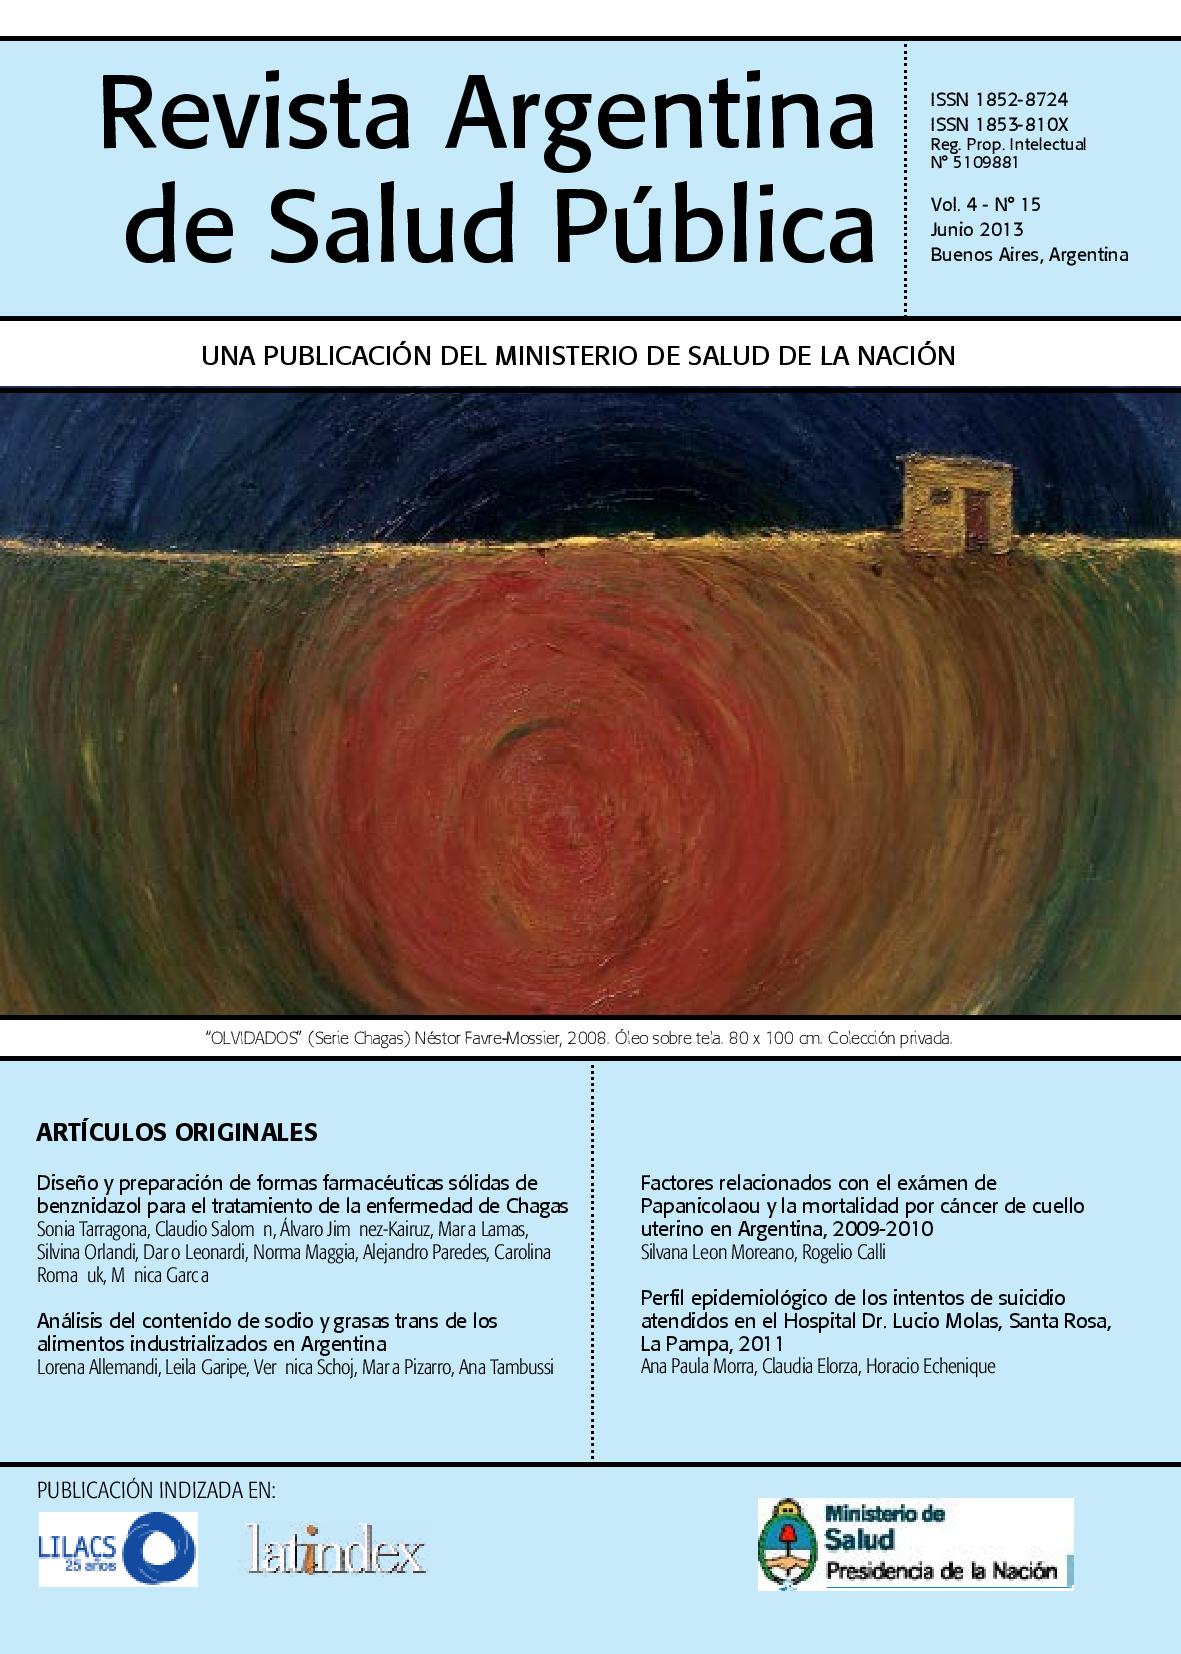 					View Vol. 4 No. 15 (2013): Revista Argentina de Salud Pública
				